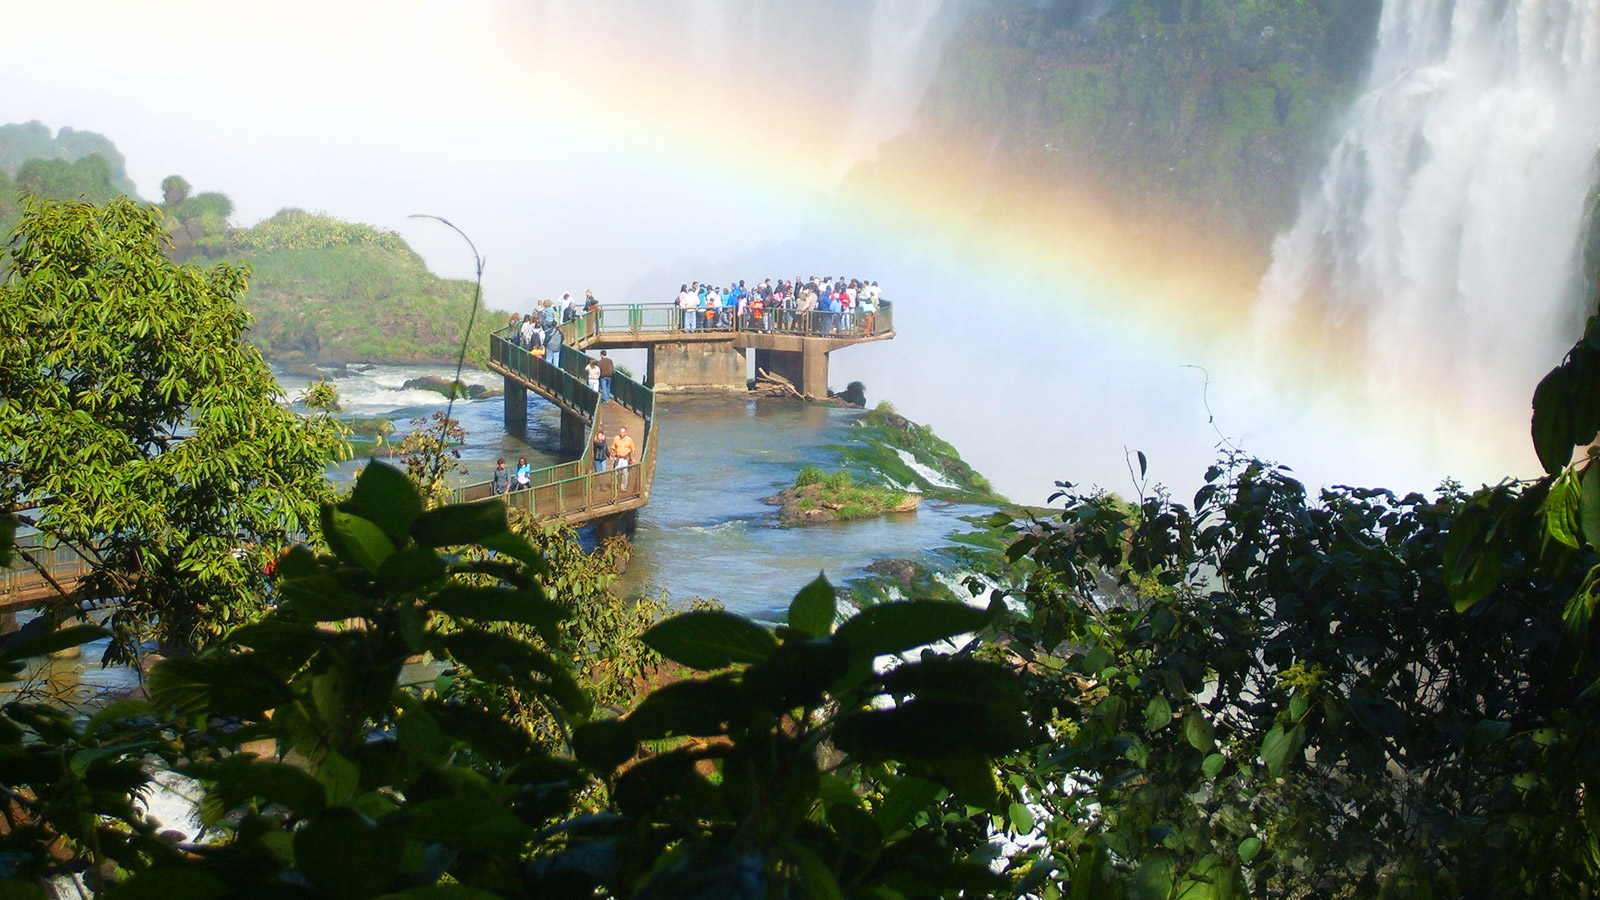 بازدید مجموعه ای از زیباترین آبشارهای دنیا